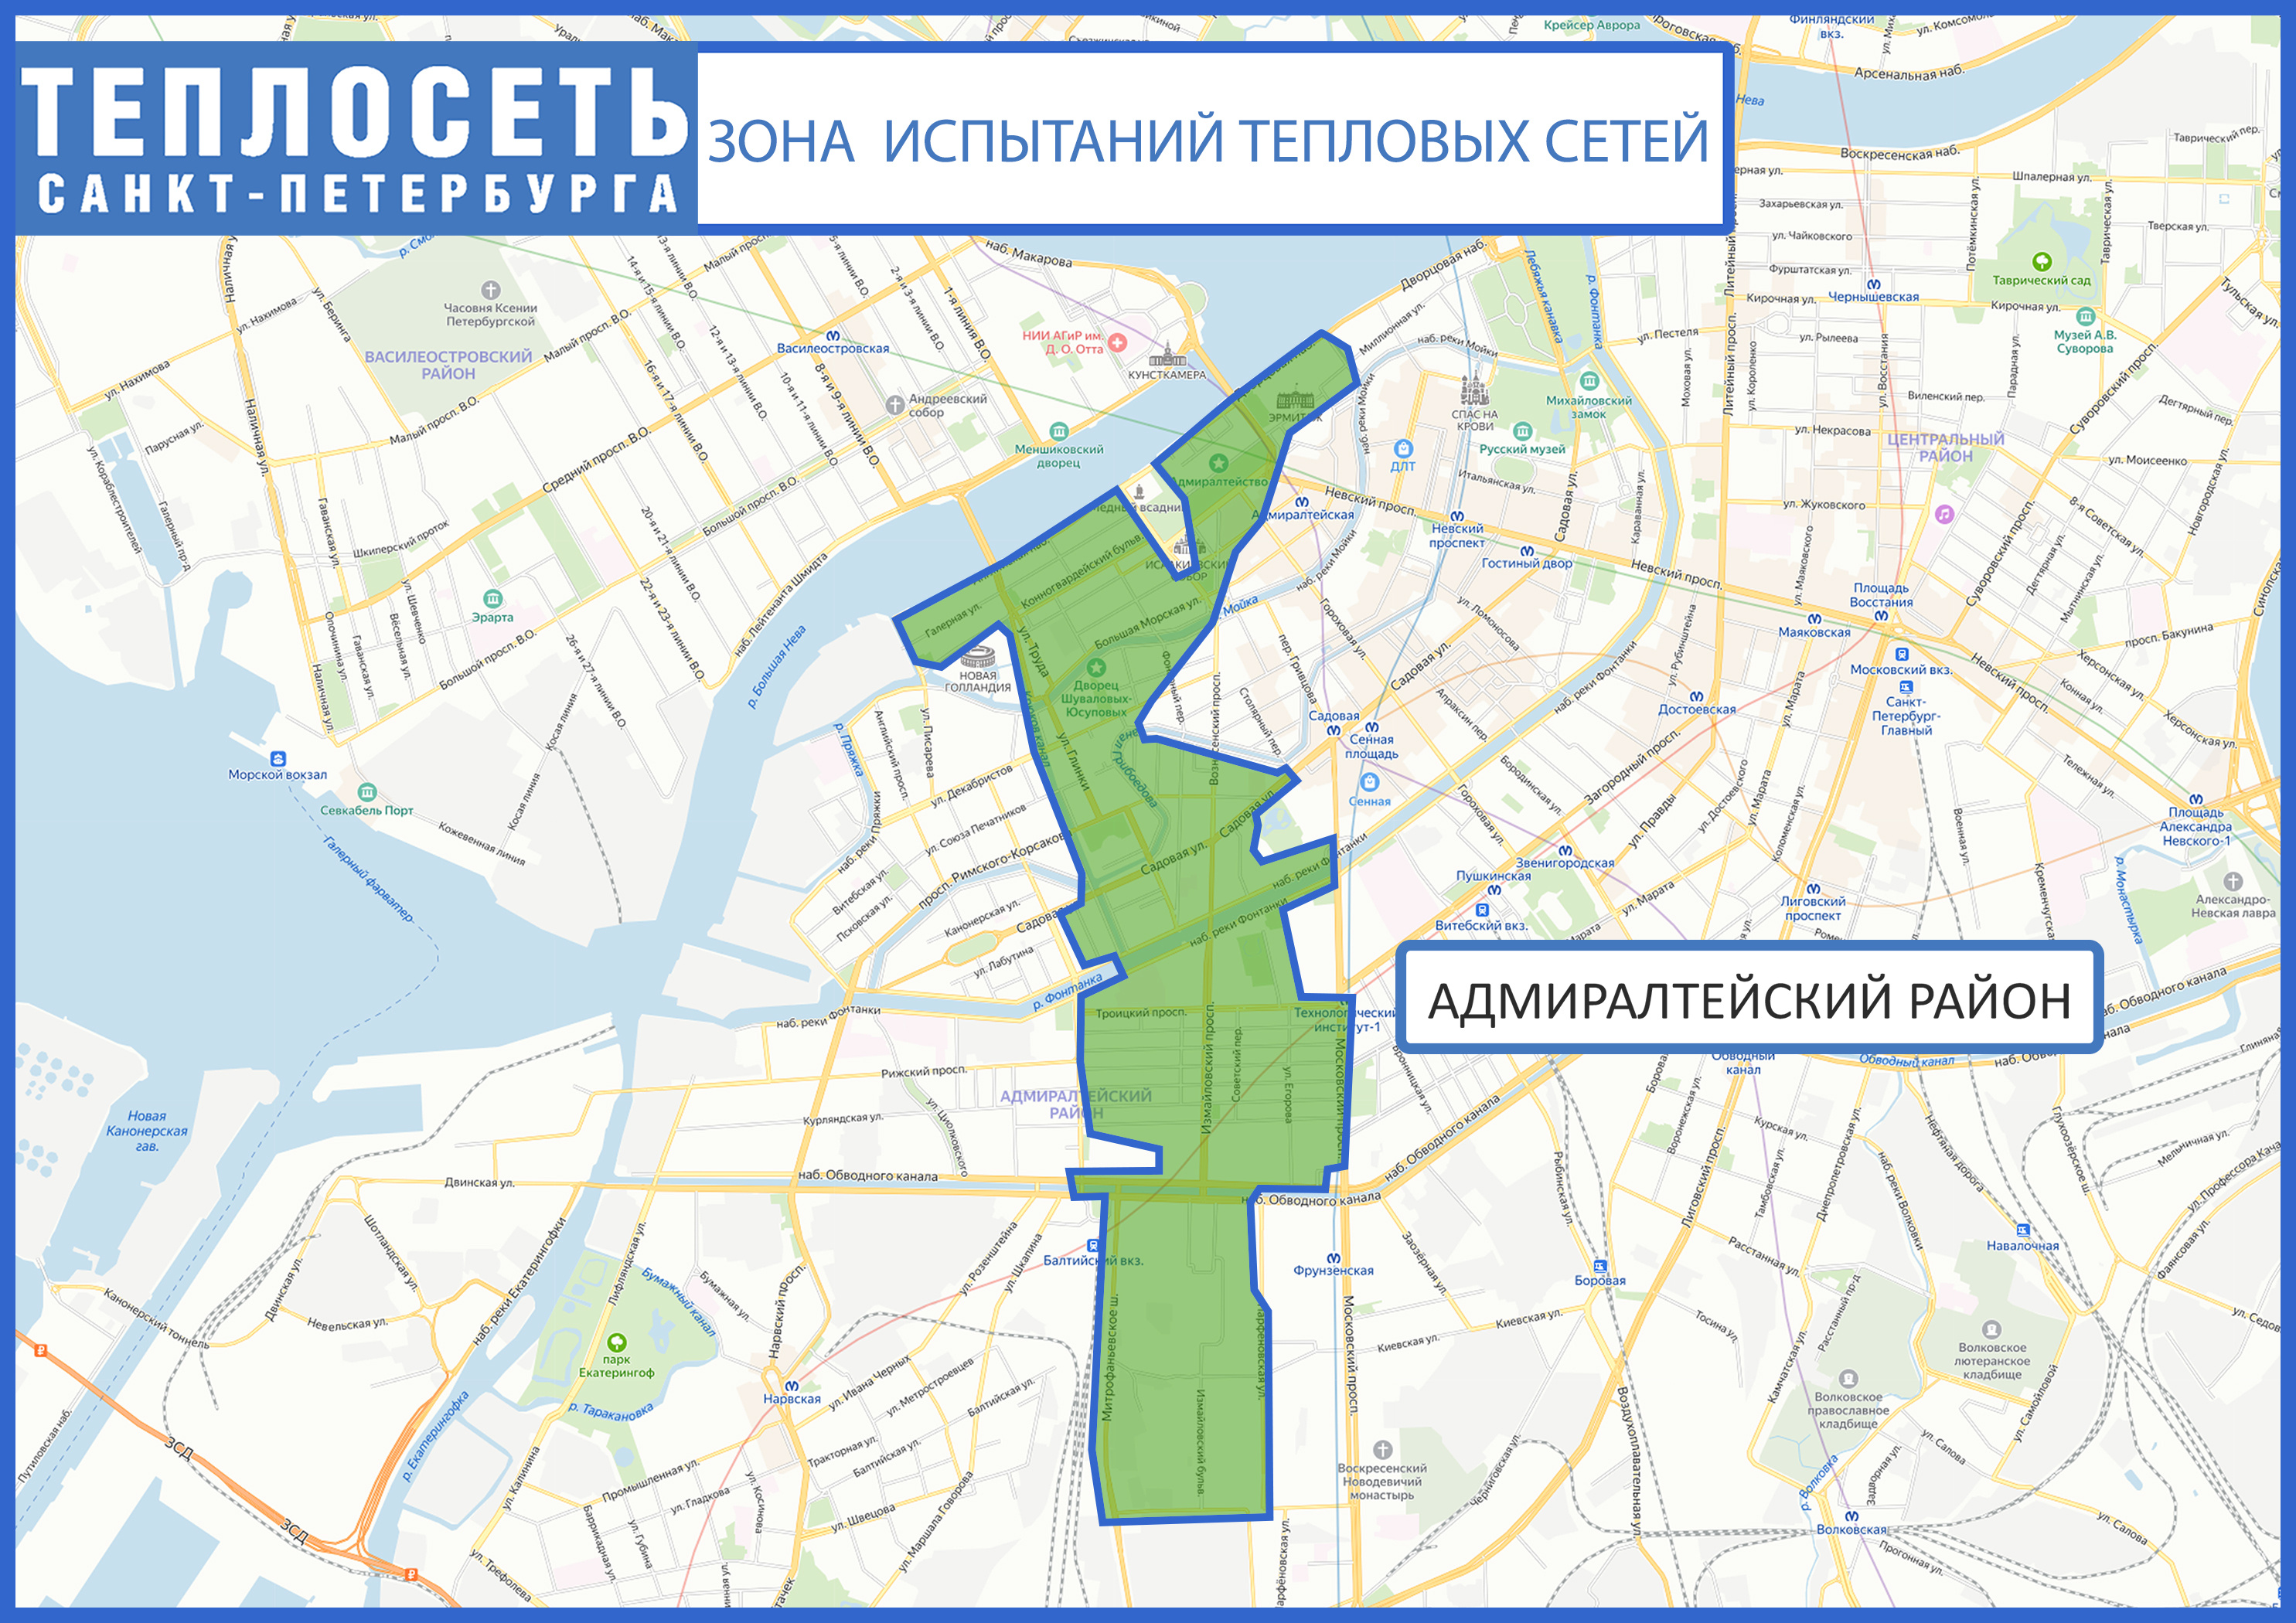 В центре Петербурга начались испытания сетей. Горячей воды не будет несколько дней